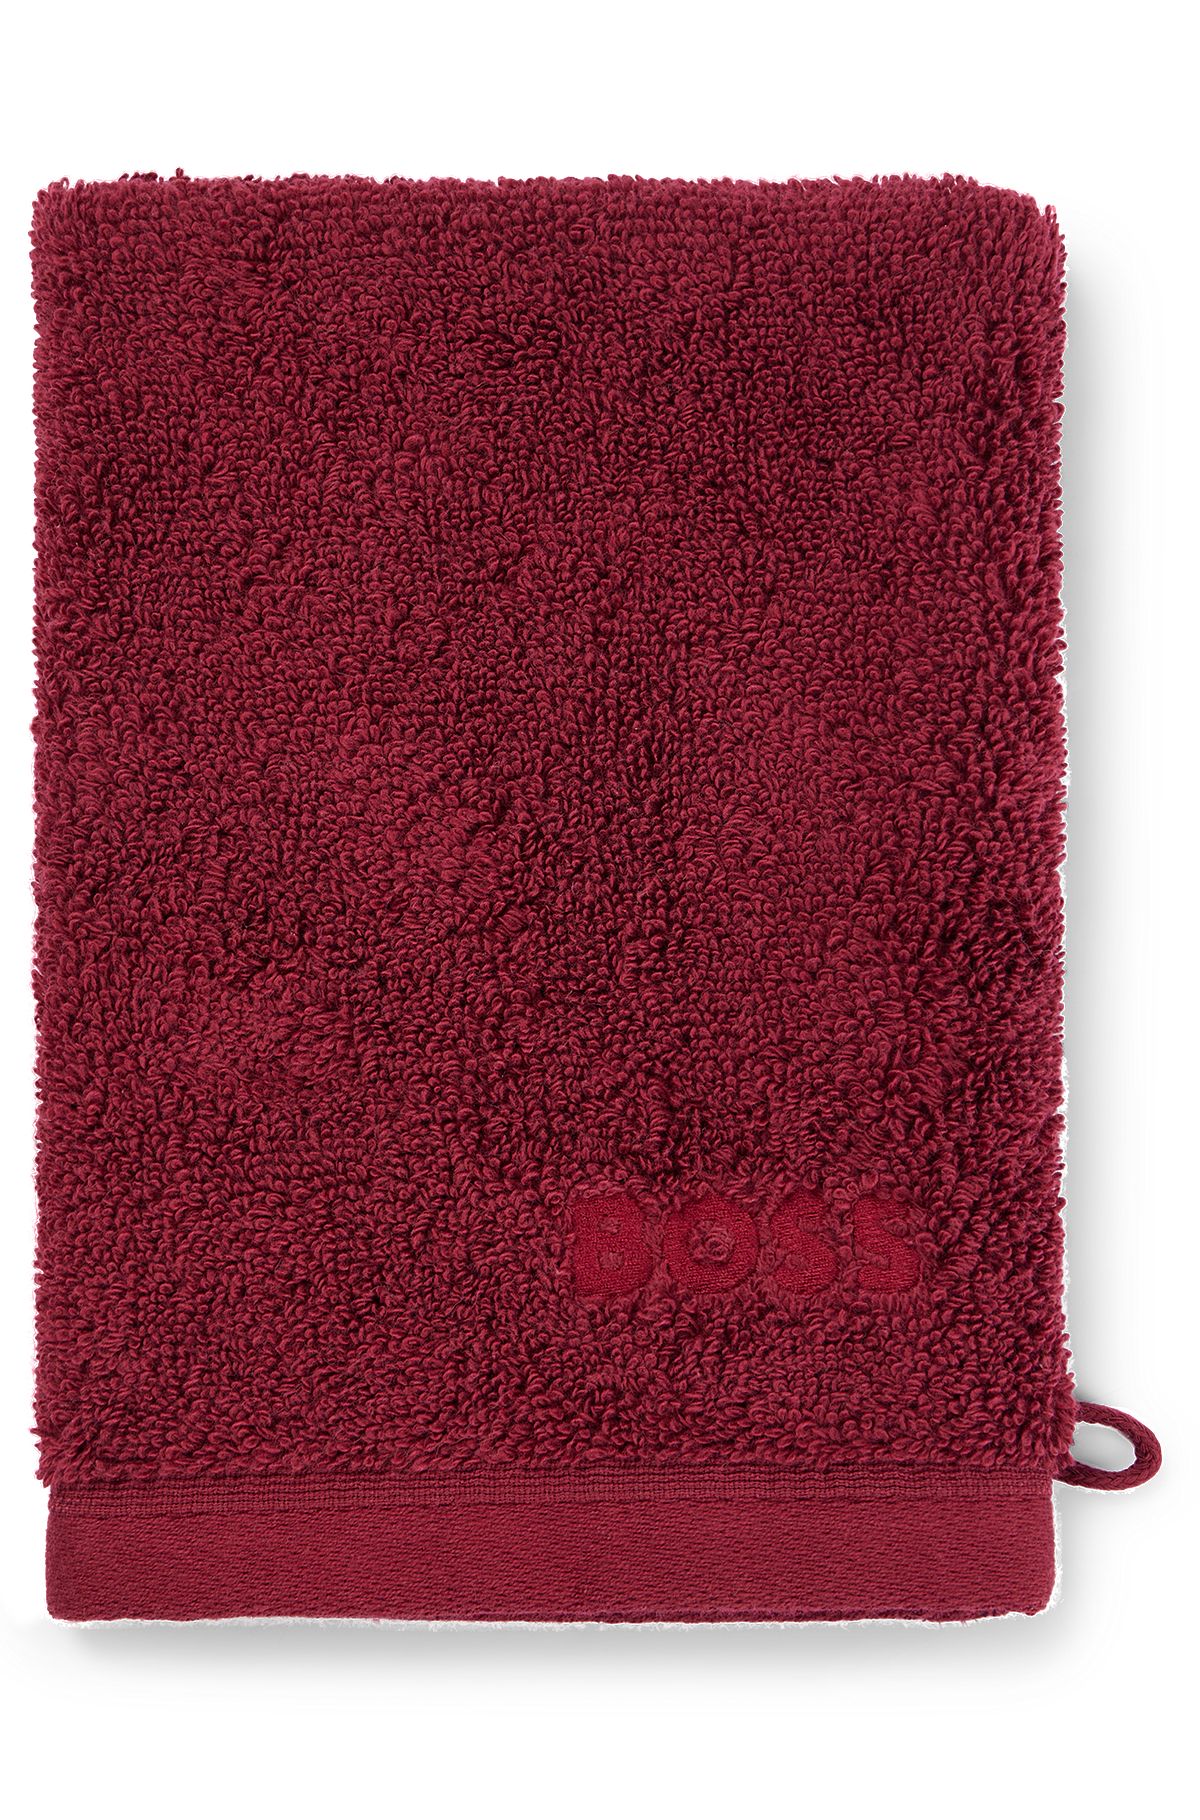 Manopla de baño con logo en algodón peinado del Egeo, Rojo oscuro